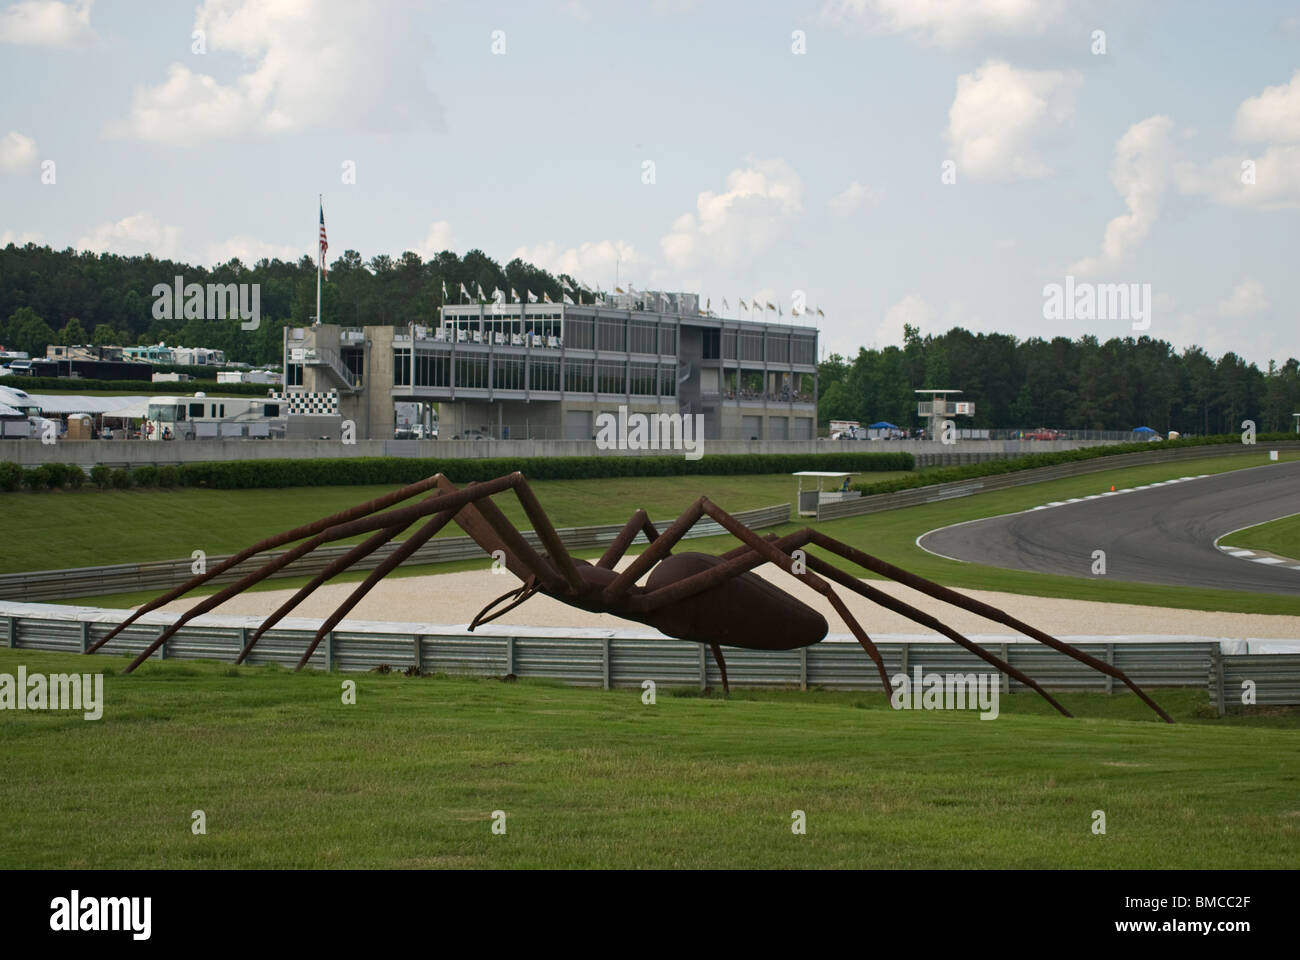 "Spider" y el infield en Barber Motorsports Park, cerca de Birmingham, Alabama, EE.UU. Foto de stock